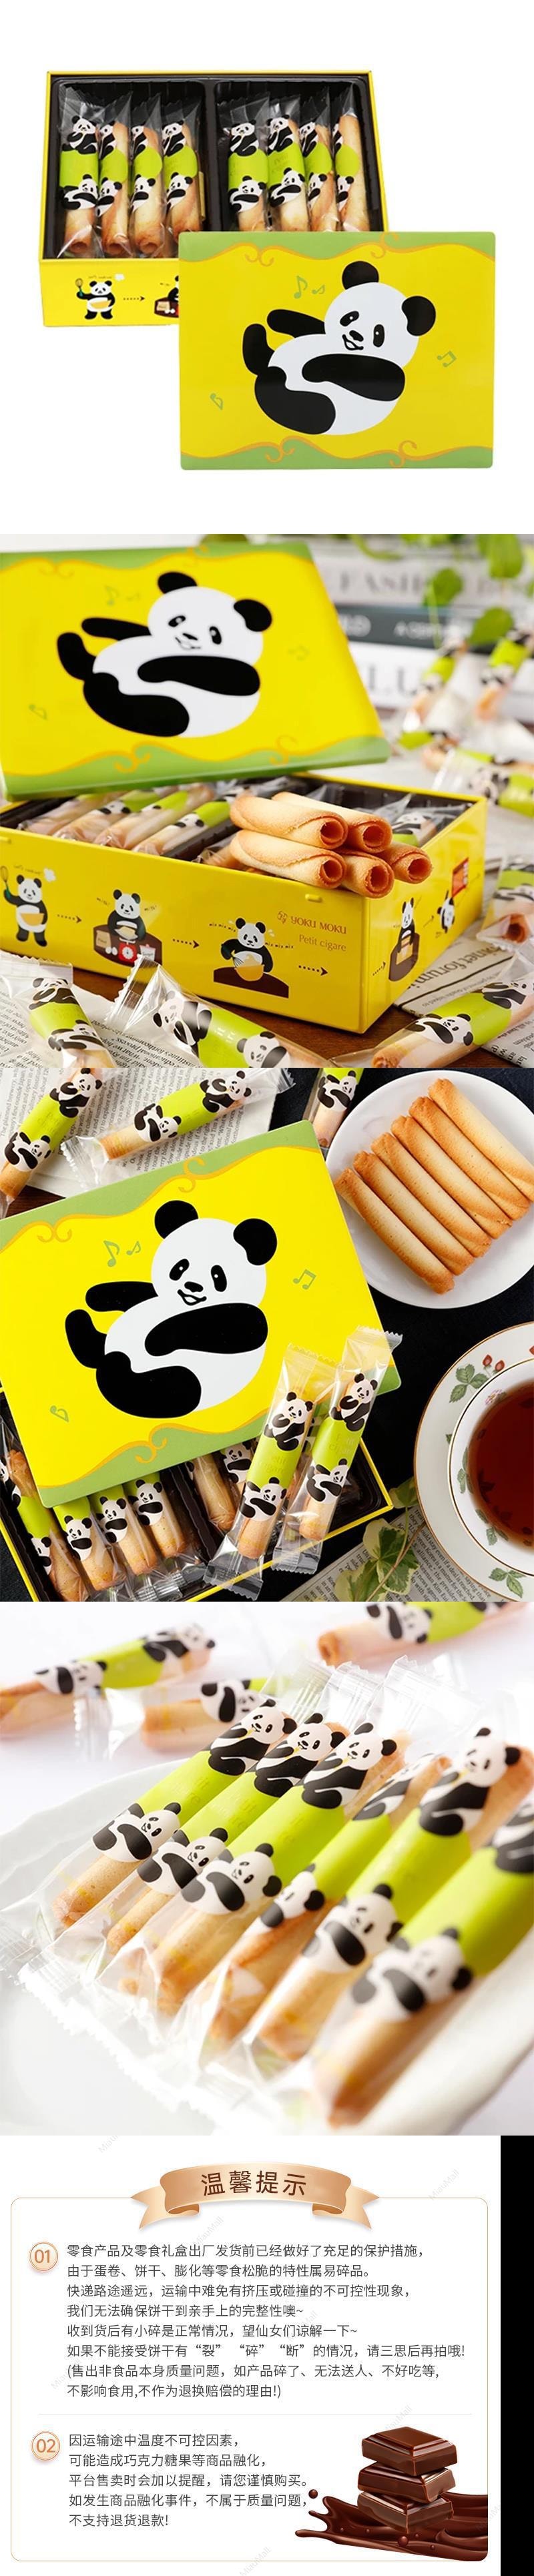 【日本直邮】YOKUMOKU 原味雪茄手工黄油蛋卷 16枚 奶香浓郁 小熊猫礼盒